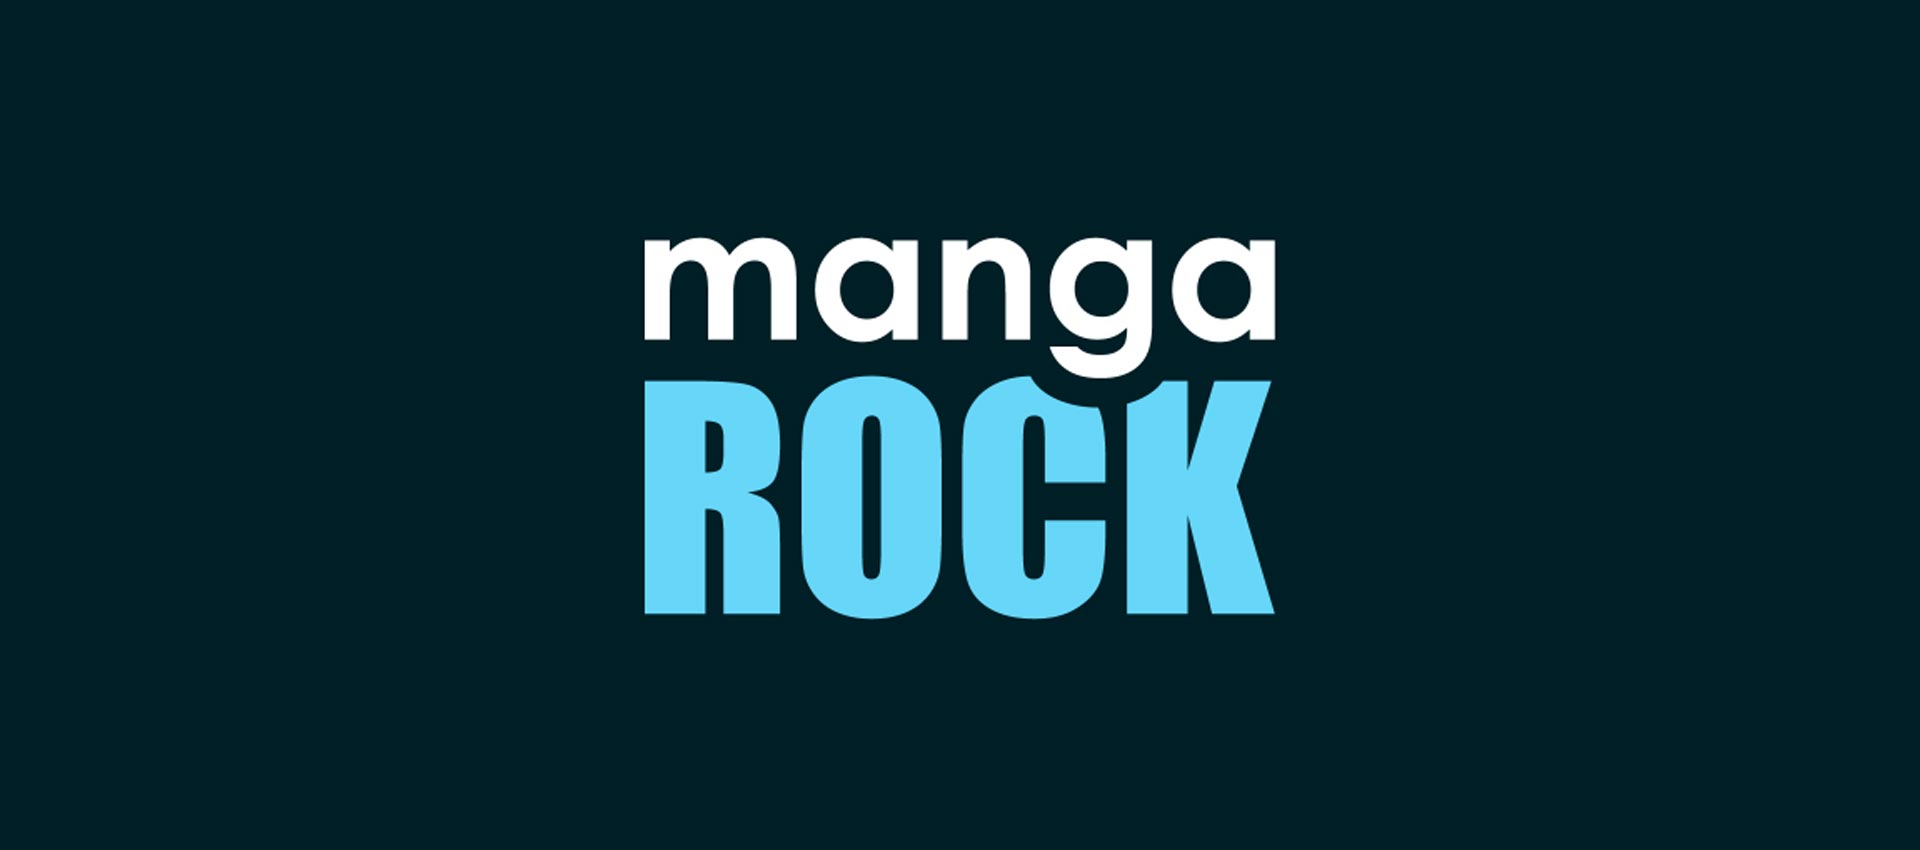 manga rock apk